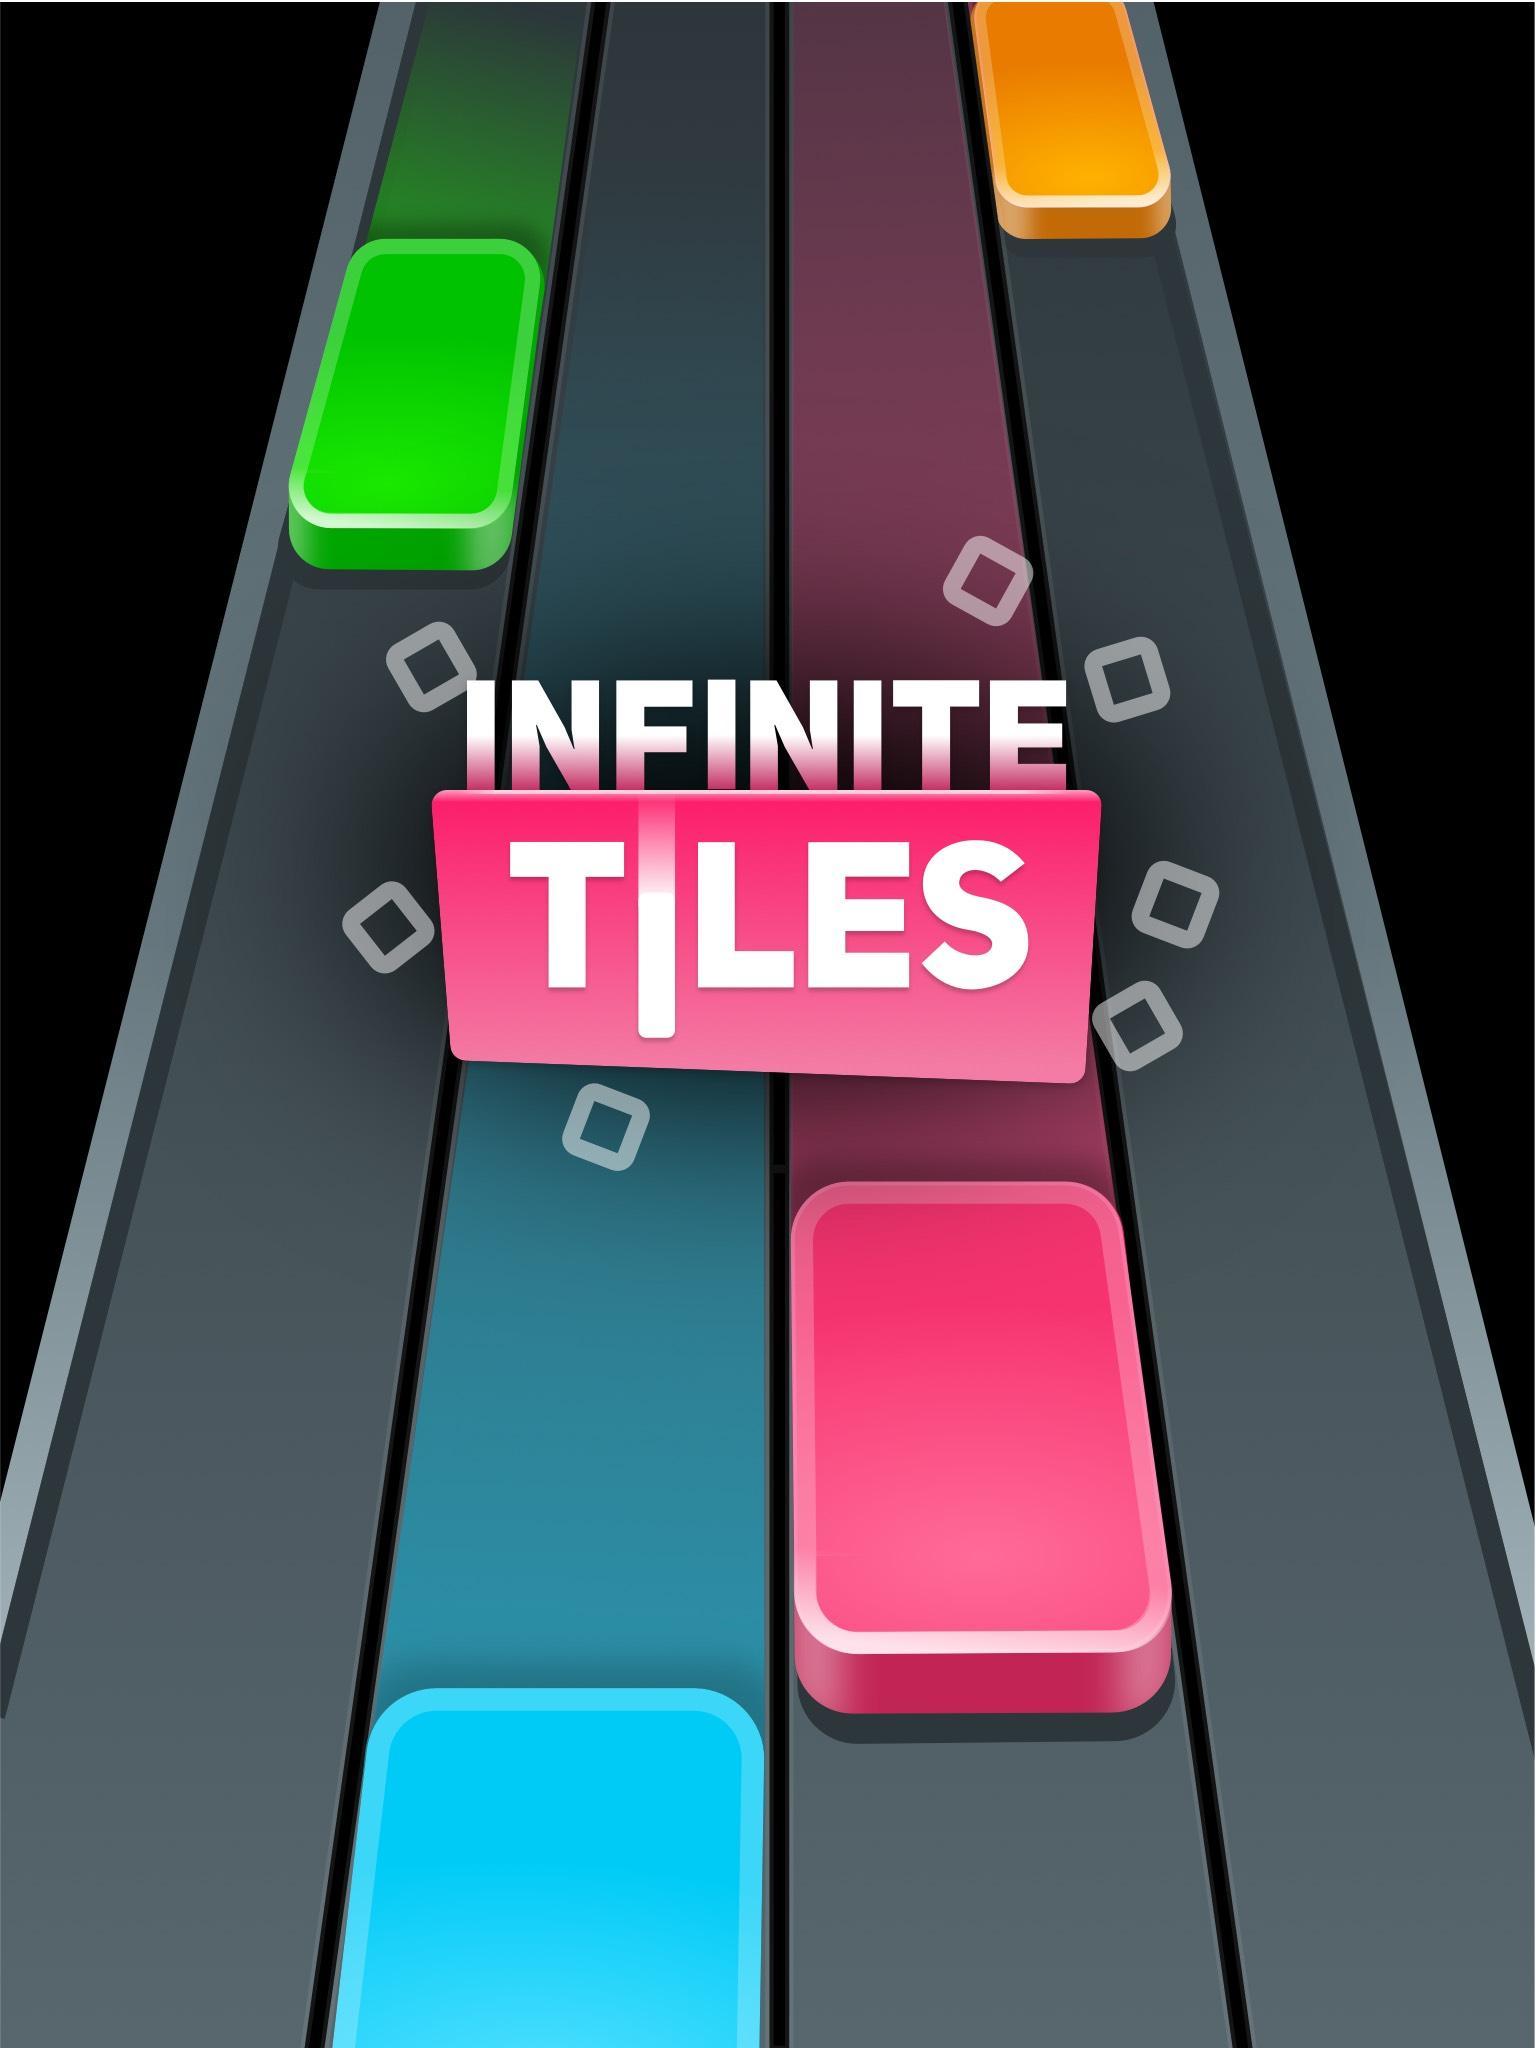 INFINITE TILES - Be Fast! screenshot game